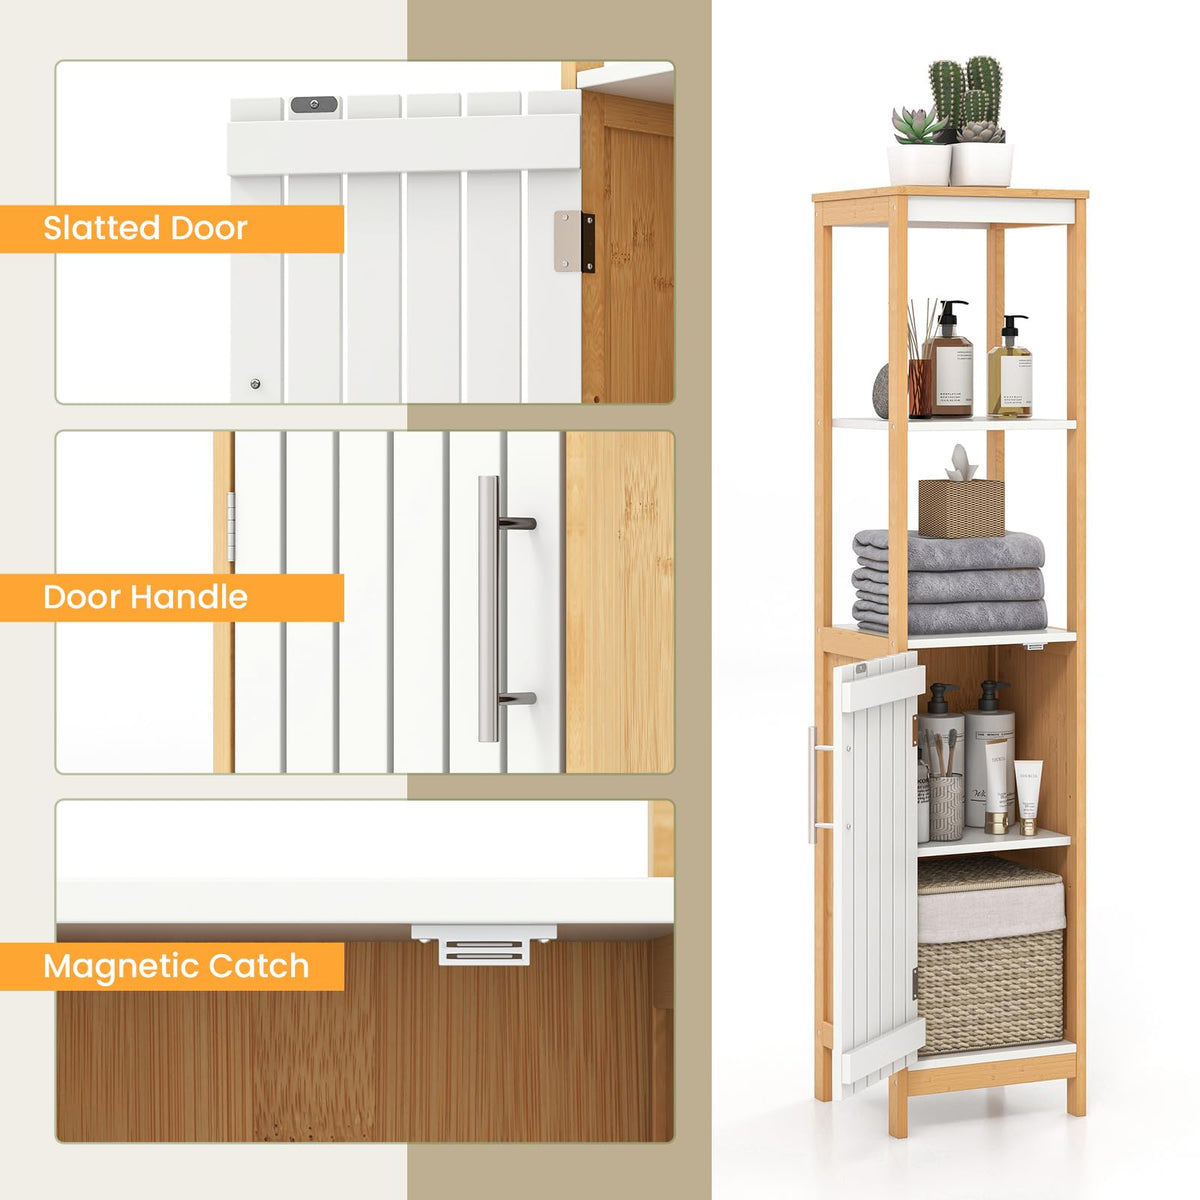 Giantex Bathroom Floor Cabinet, Narrow Freestanding Storage Cabinet with Door